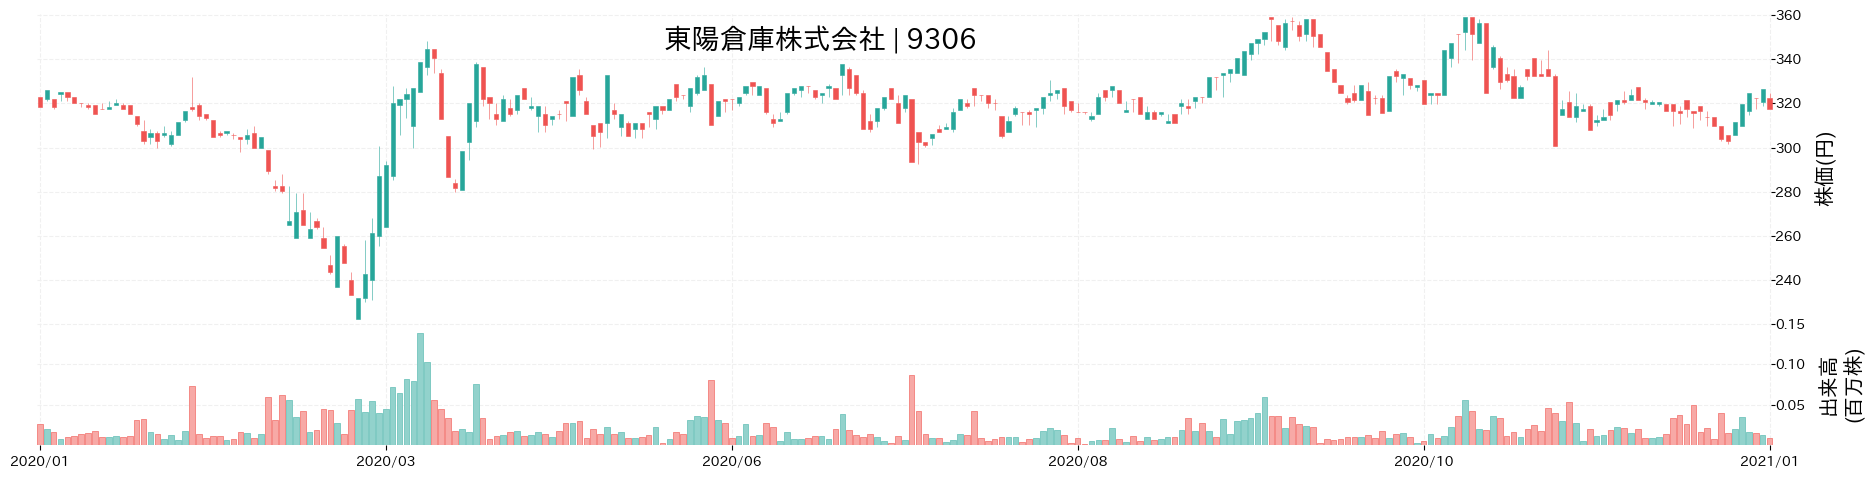 東陽倉庫の株価推移(2020)